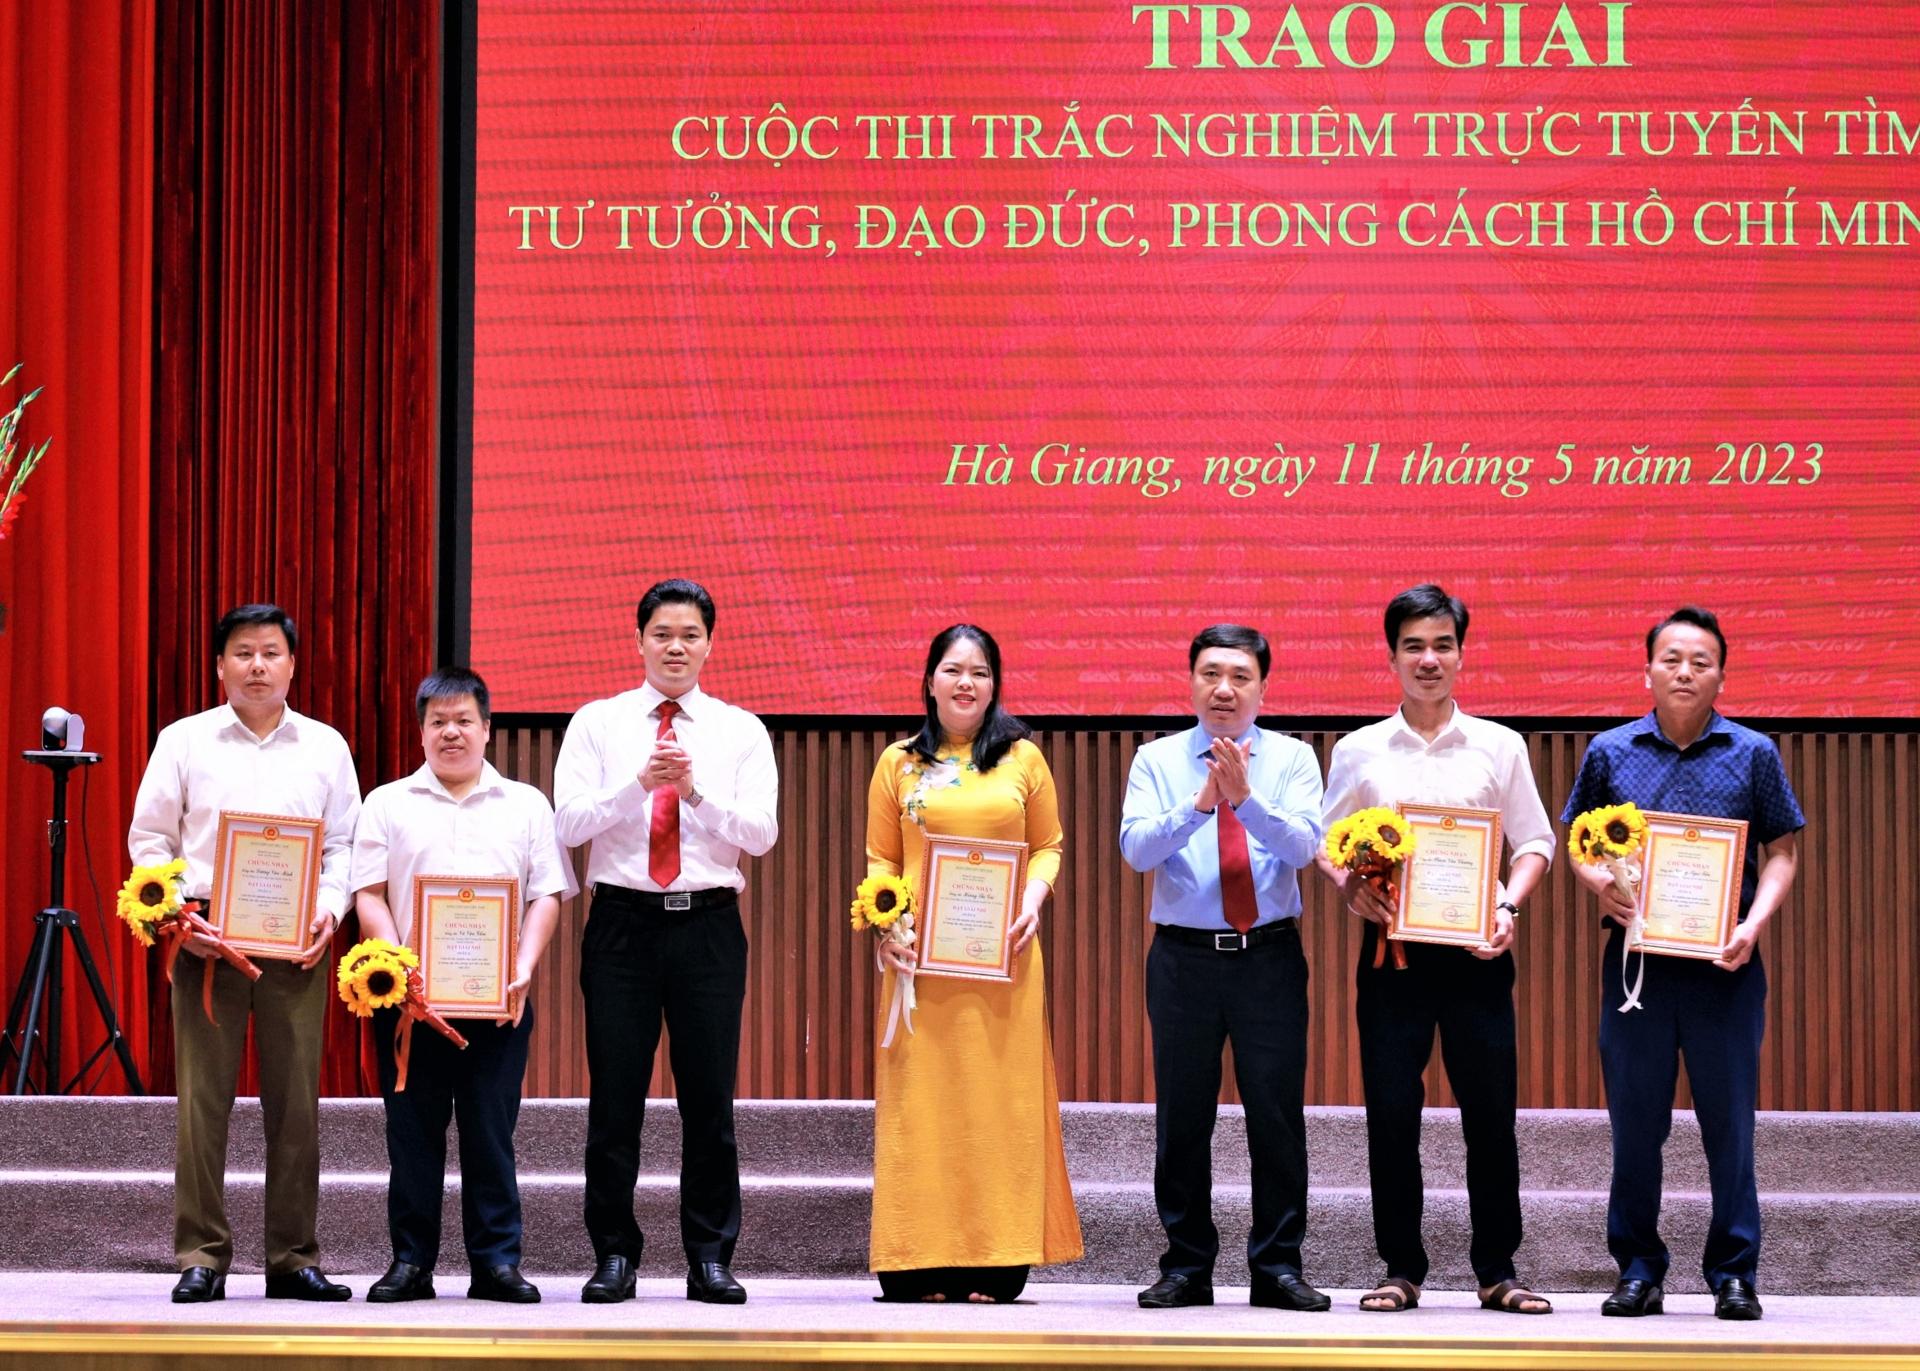 Phó Bí thư Tỉnh ủy Nguyễn Mạnh Dũng và Trưởng ban Tuyên giáo Tỉnh ủy Vũ Mạnh Hà trao giải Nhì cho các cá nhân đạt giải.